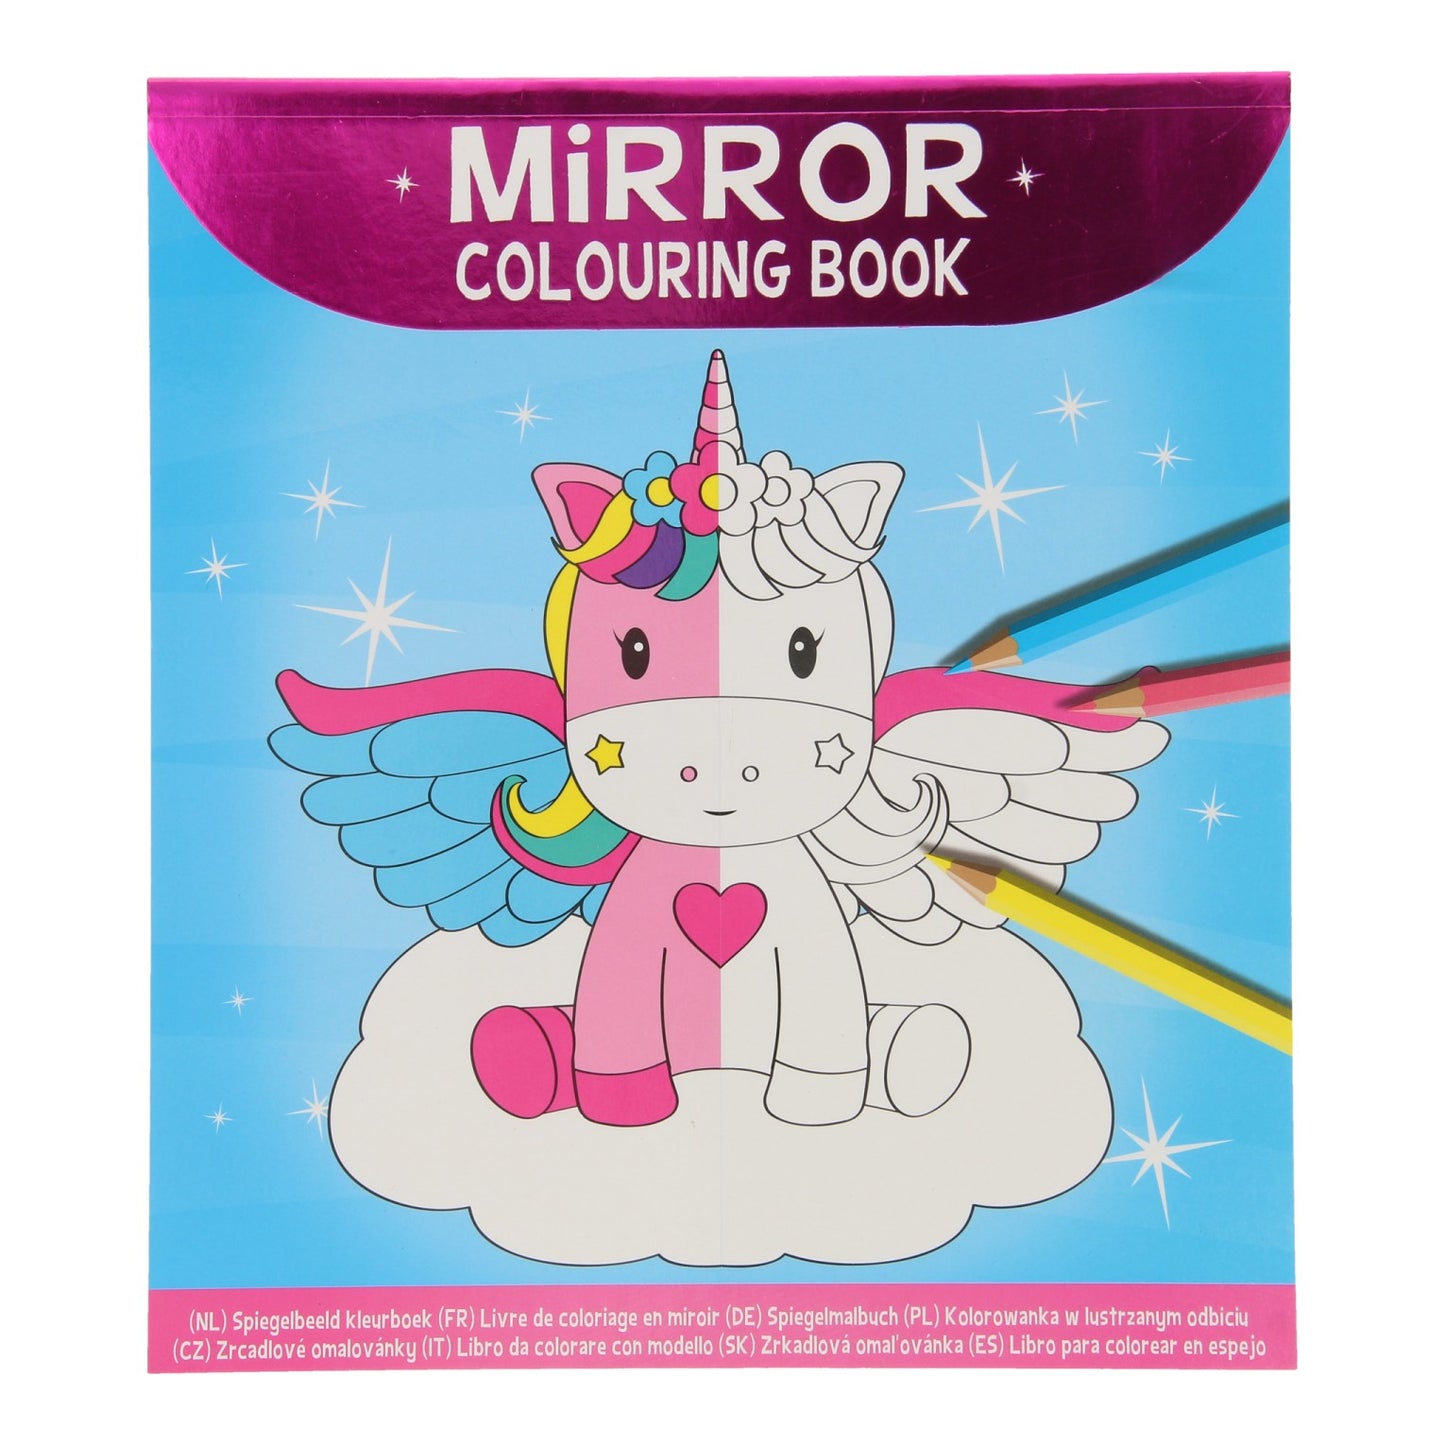 Disegno immagine specchio del libro da colorare